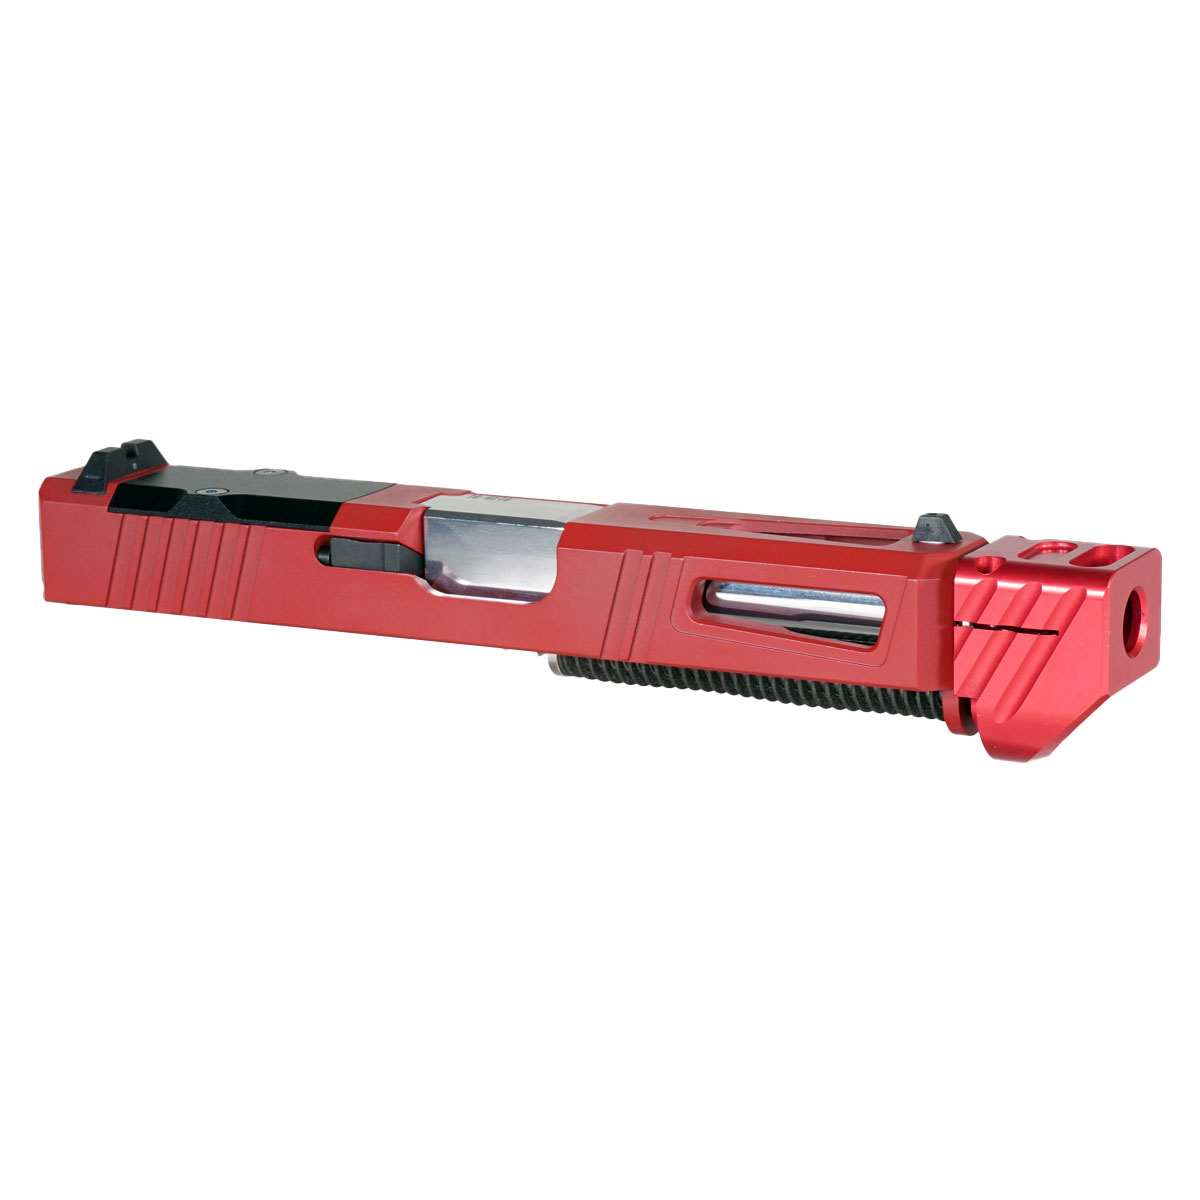 OTD 'Pisa V3 w/ Red Compensator' 9mm Complete Slide Kit - Glock 19 Gen 1-3 Compatible